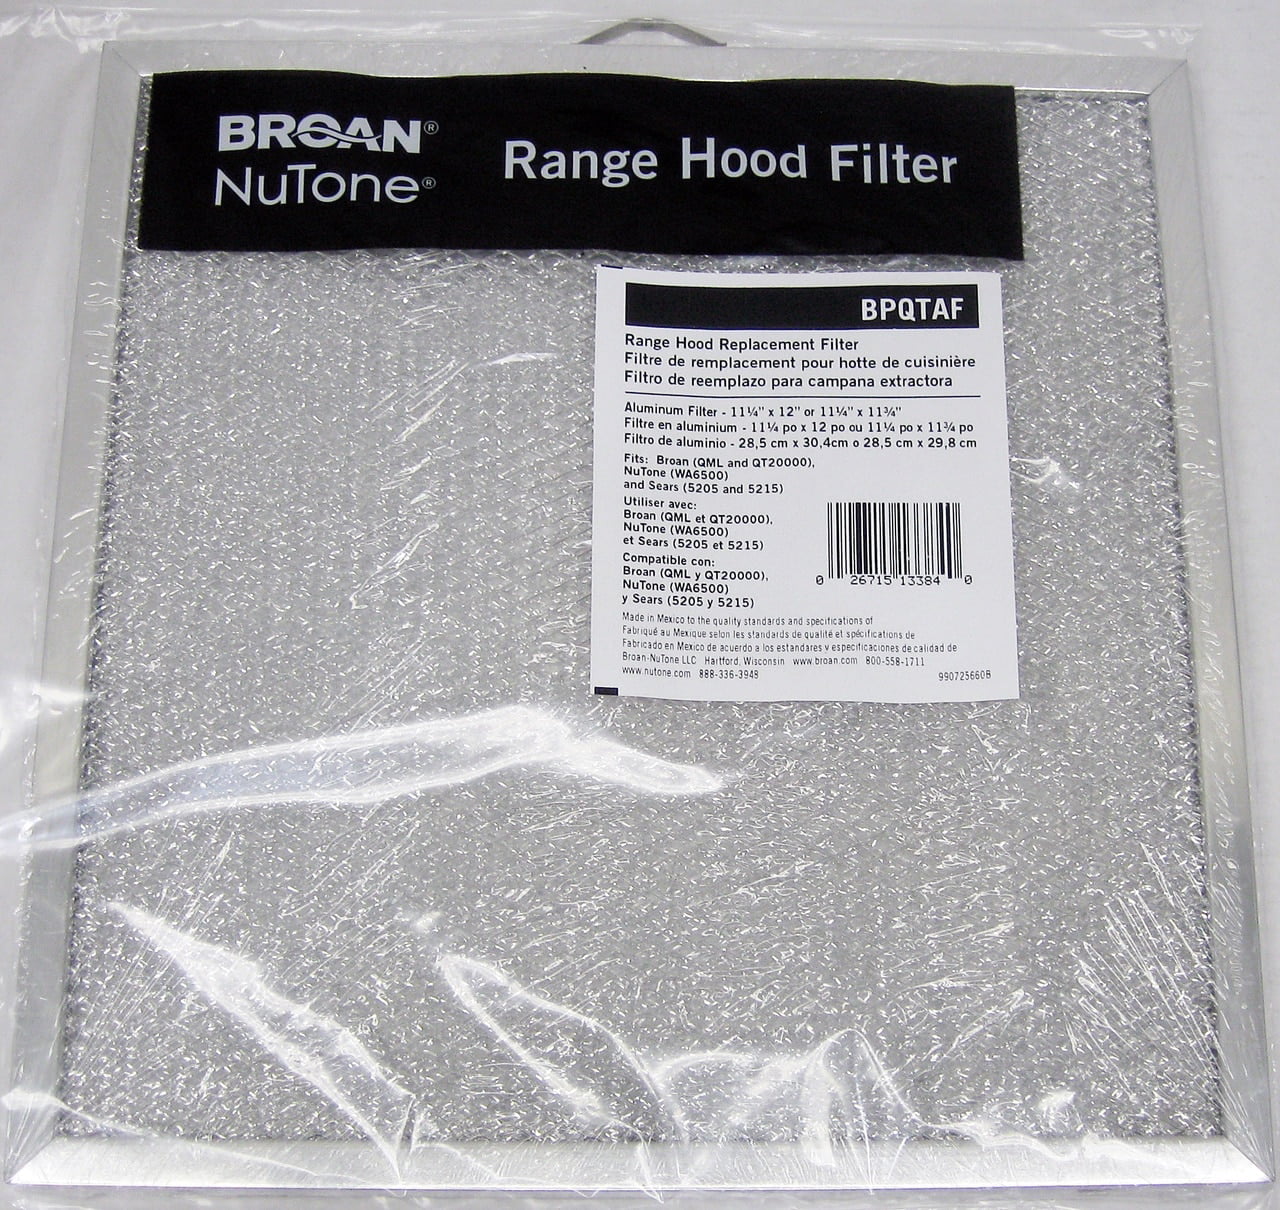 BPQTAF Broan Nutone Vent Range Hood Filter also fits S99010316 99010316